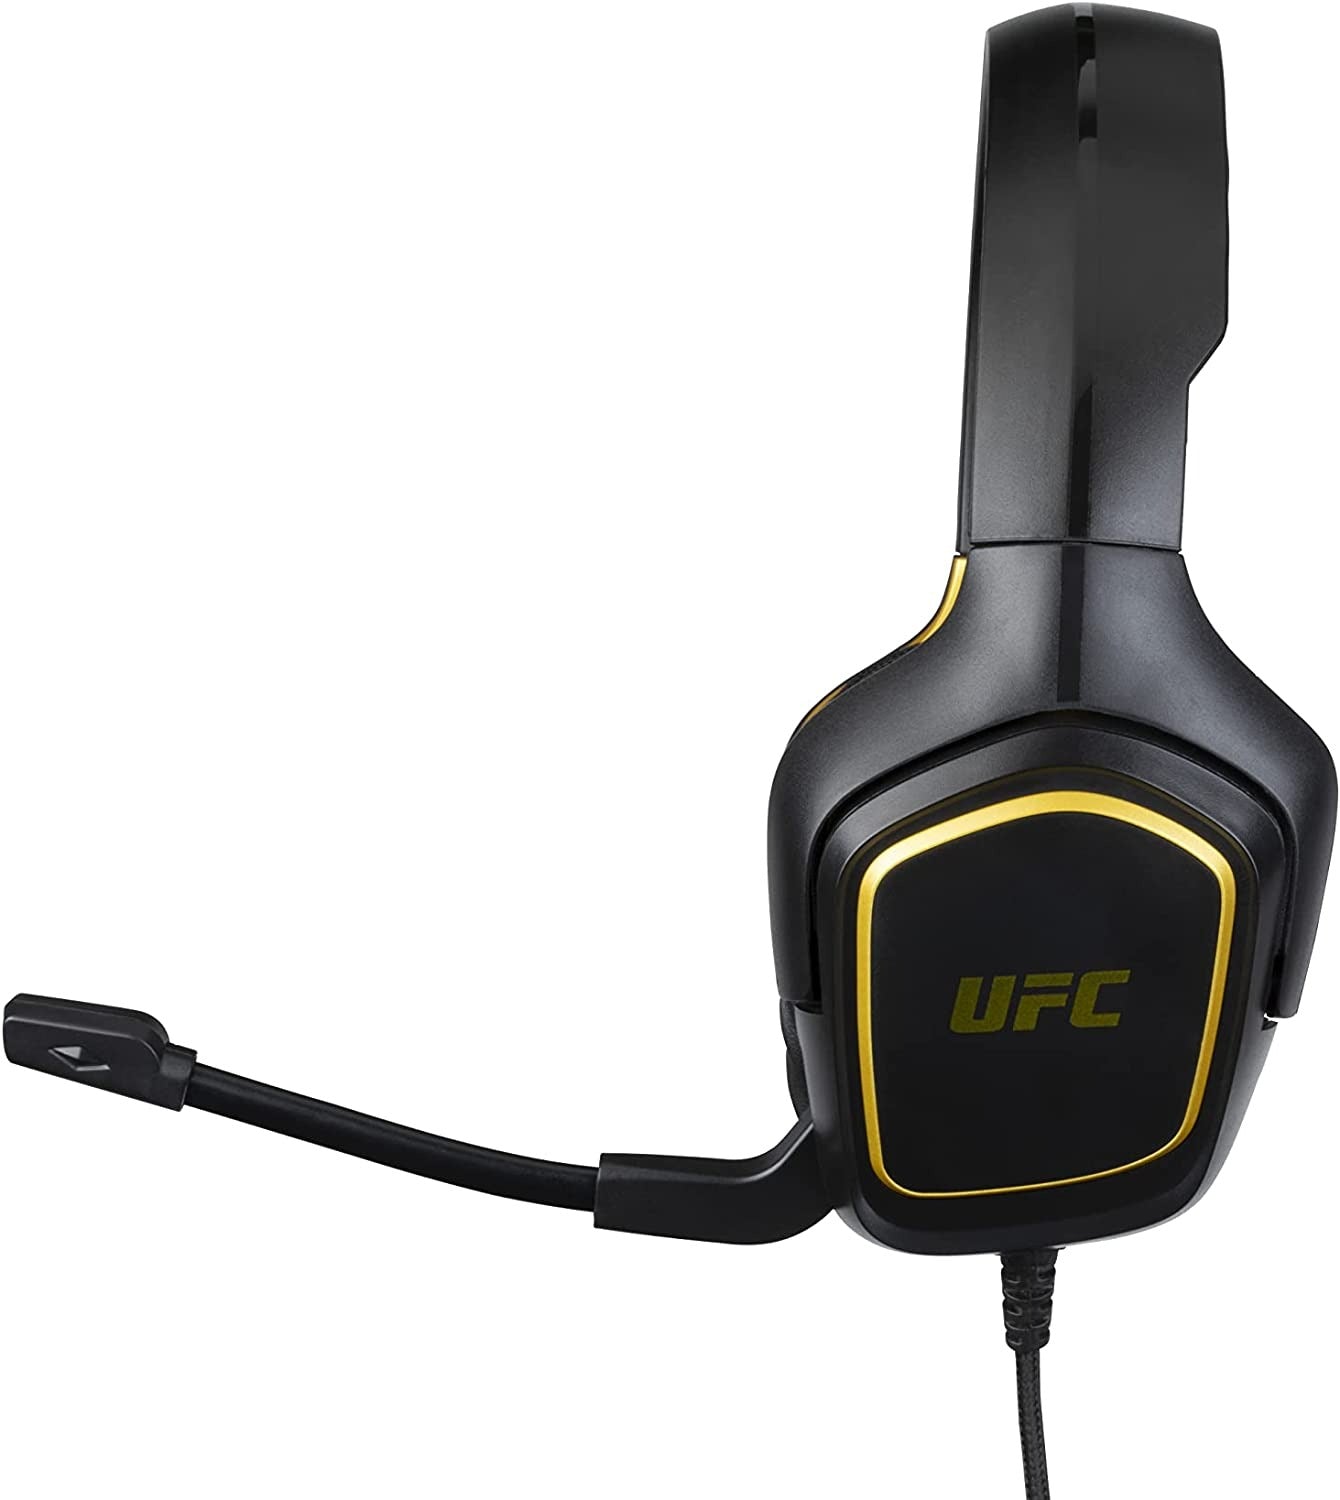 Ufc Black Gaming Headset